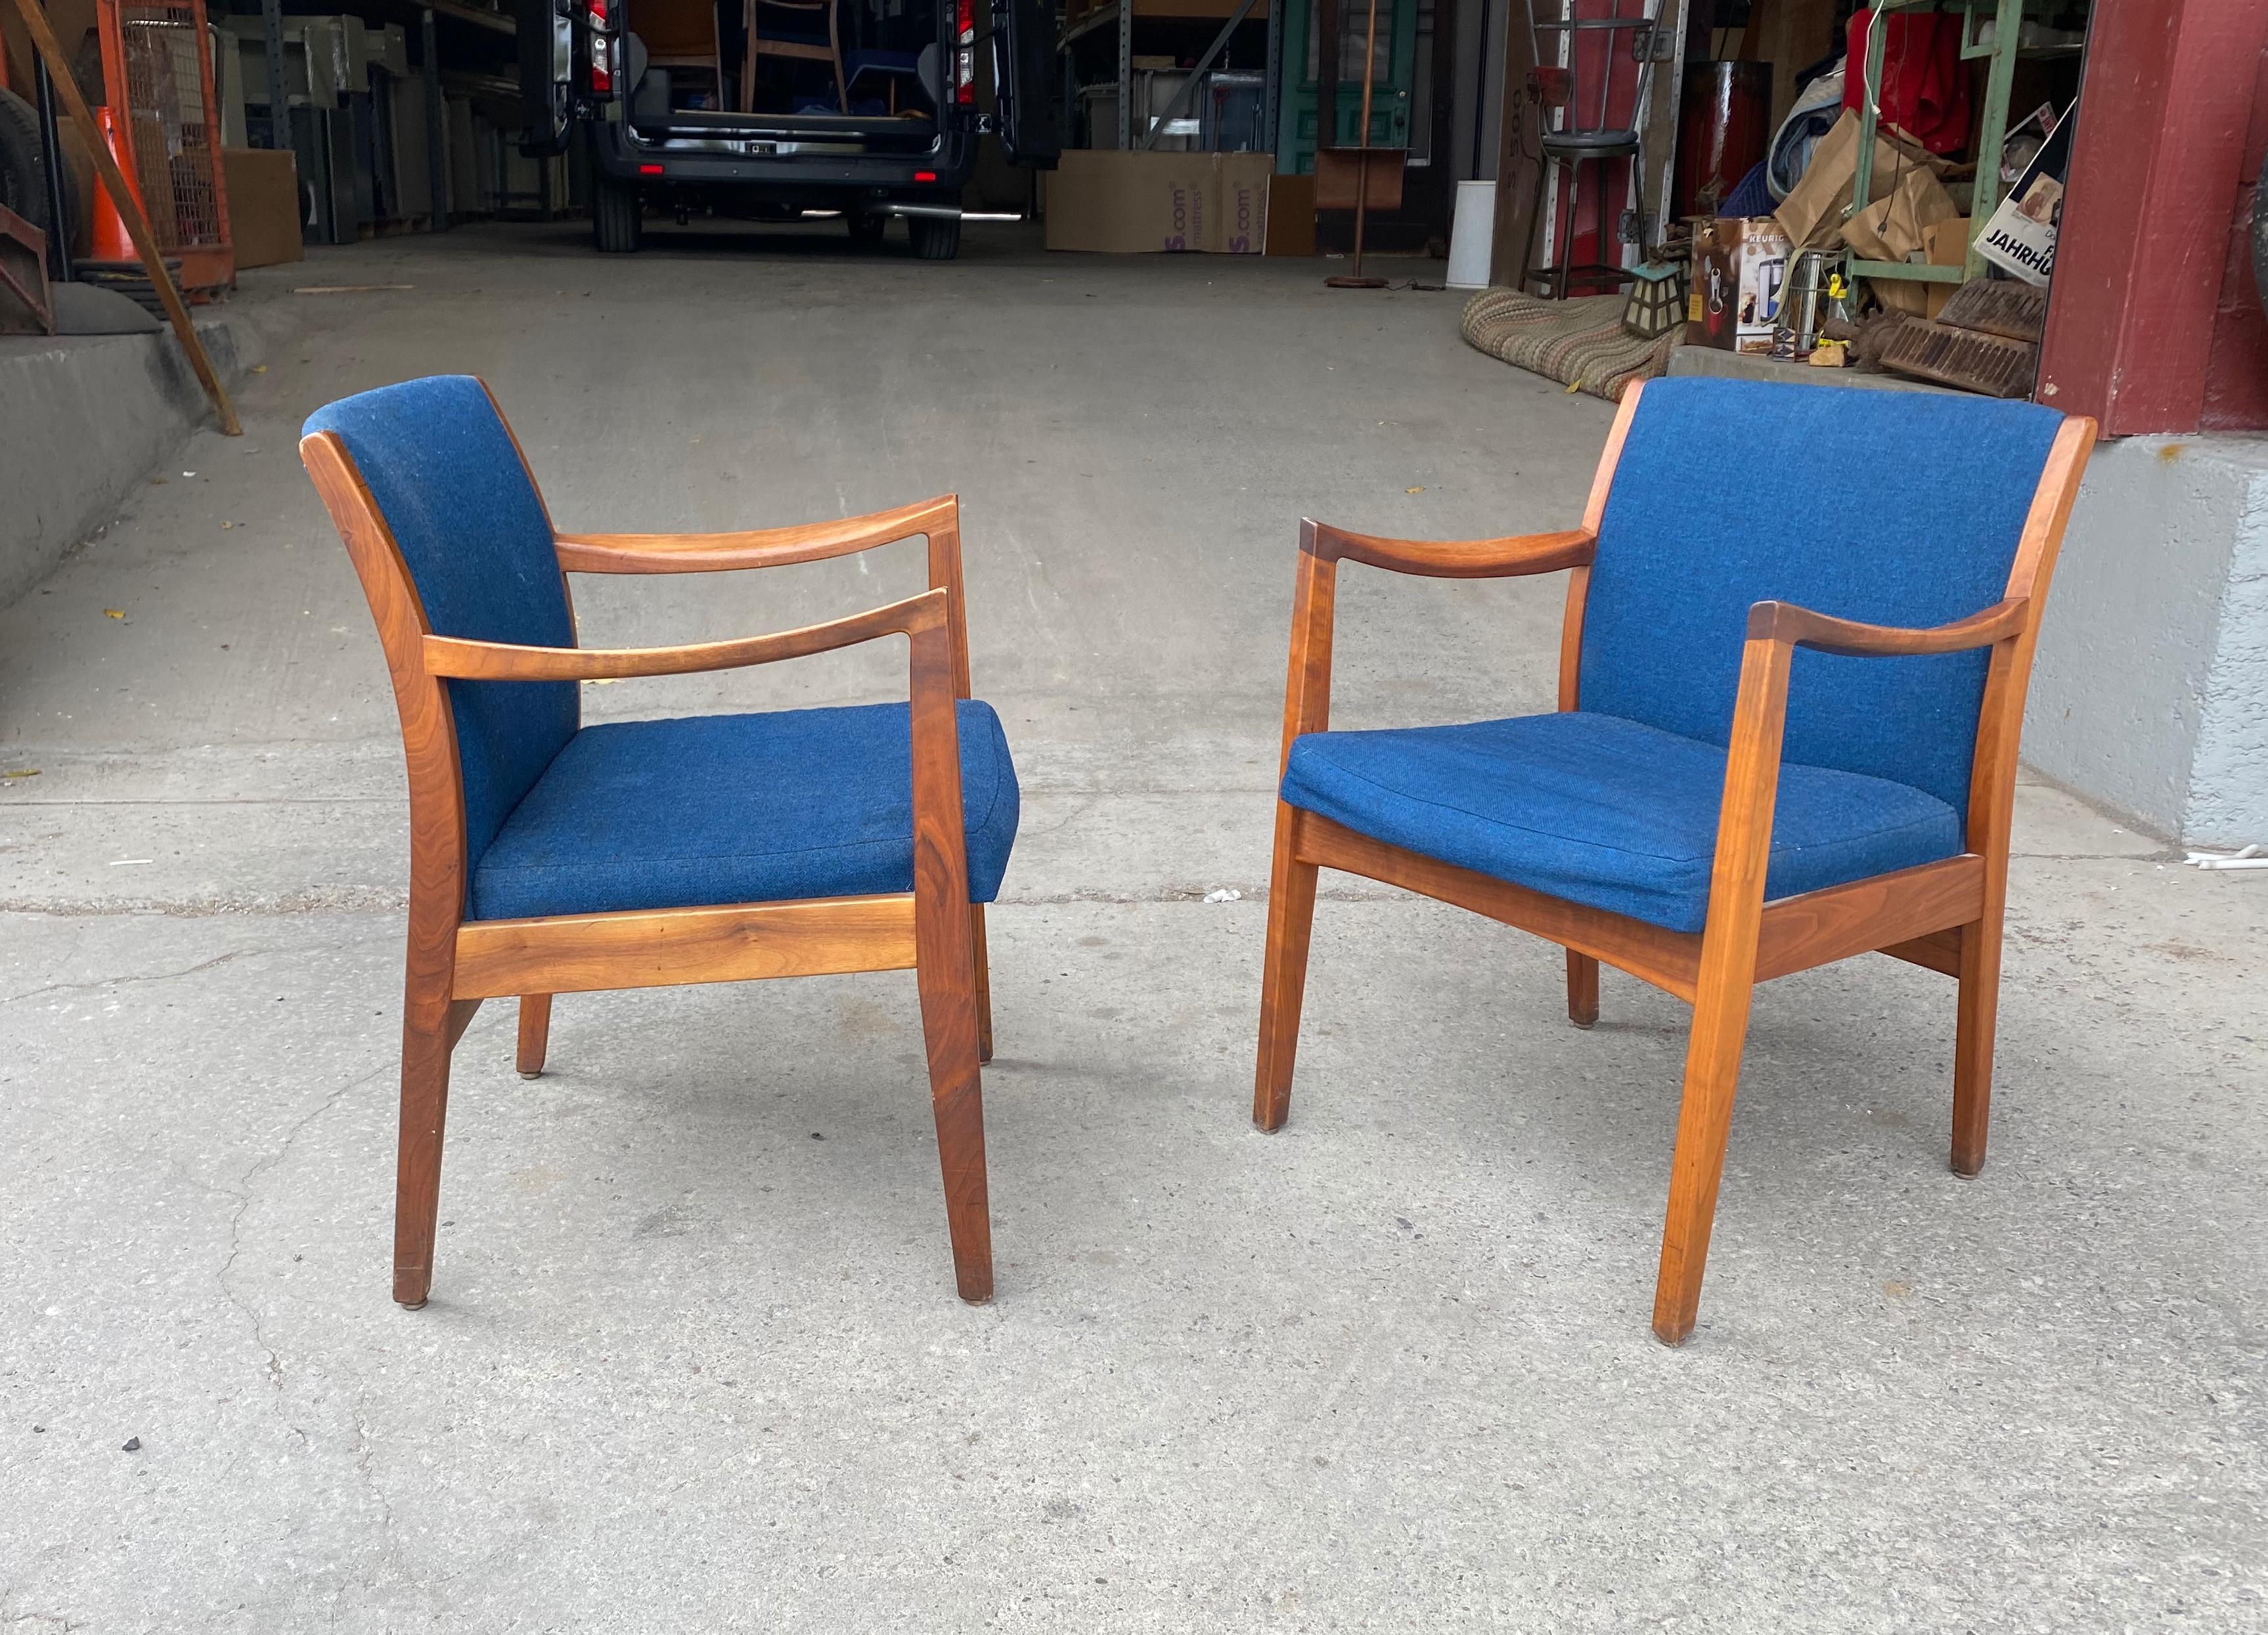 Cette superbe paire de fauteuils vintage modernes est dotée de superbes cadres en noyer, d'accoudoirs sculptés et de dossiers rembourrés. Conserve le tissu de laine bleu d'origine dans un bel état d'origine. Une conception merveilleuse qui assure le